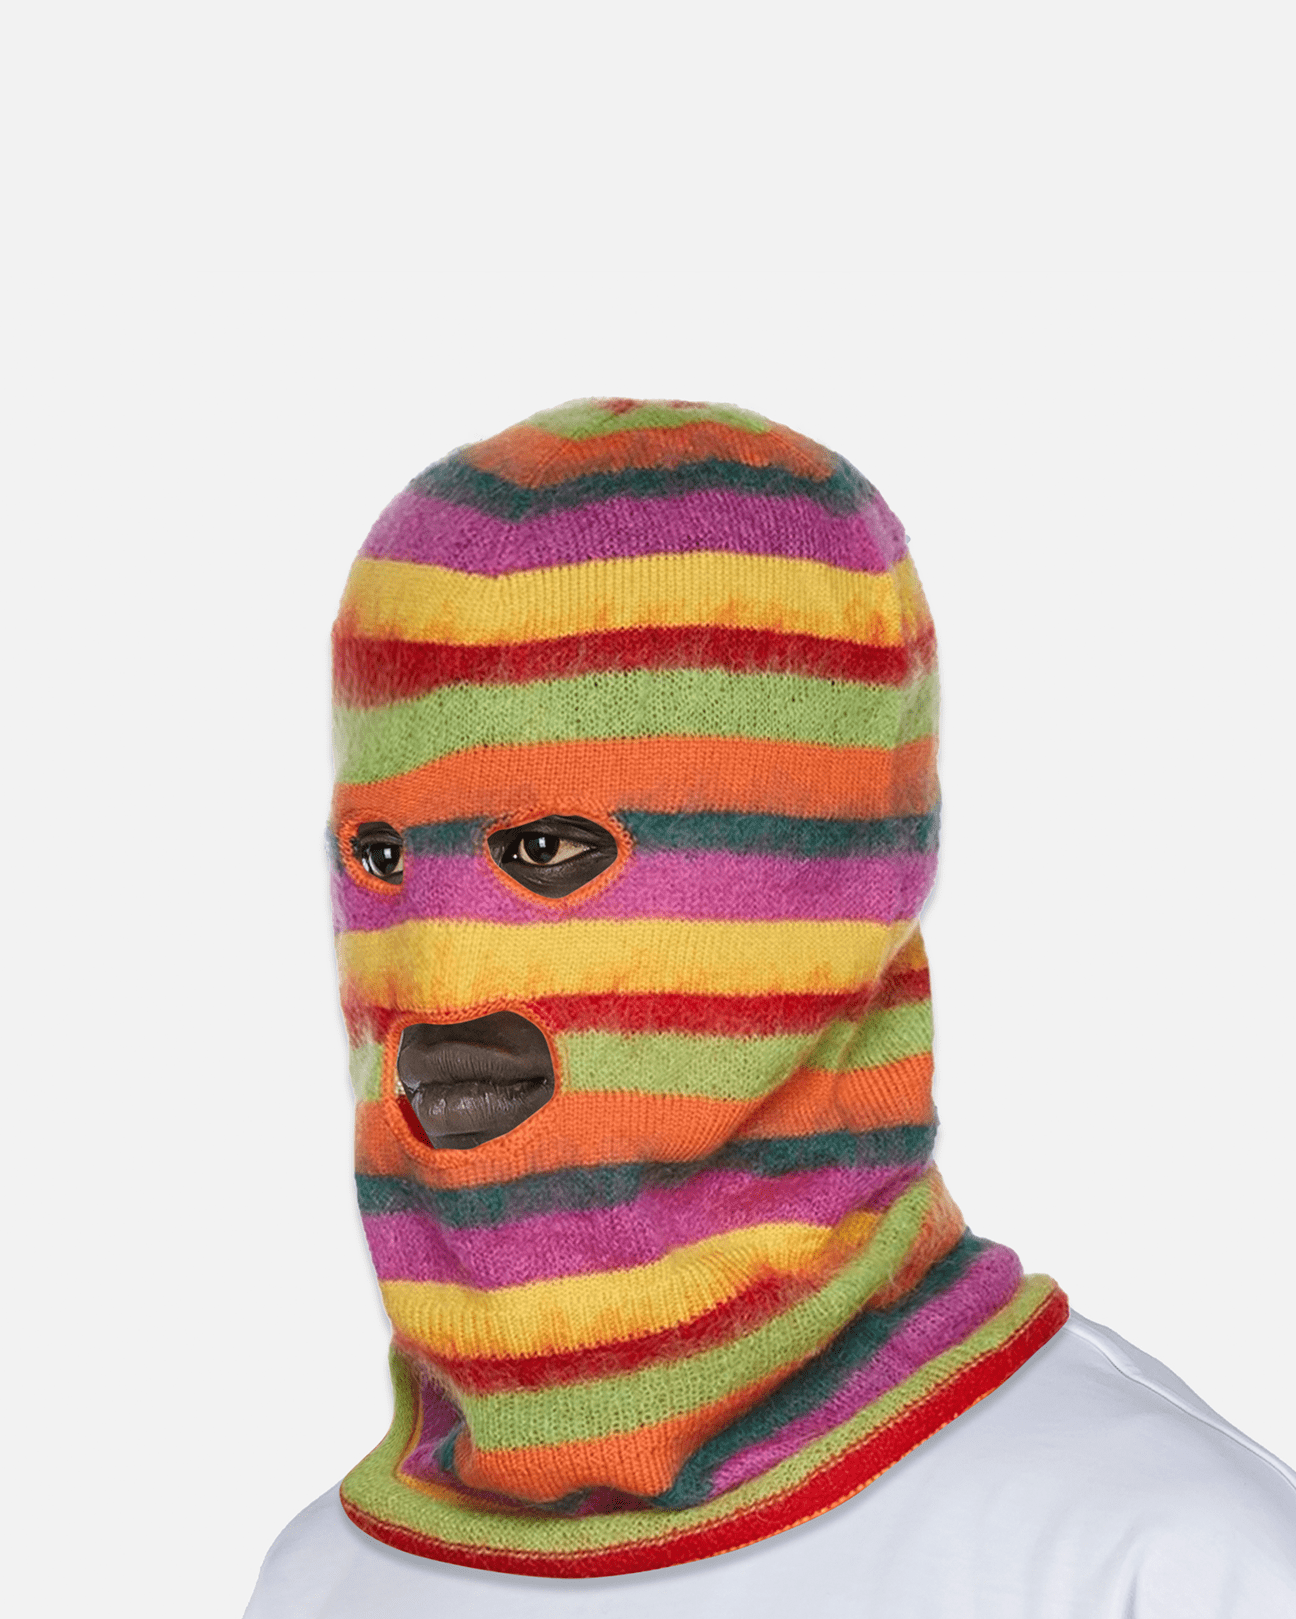 Marni Men's Hats Striped Balaclava in Multicolor